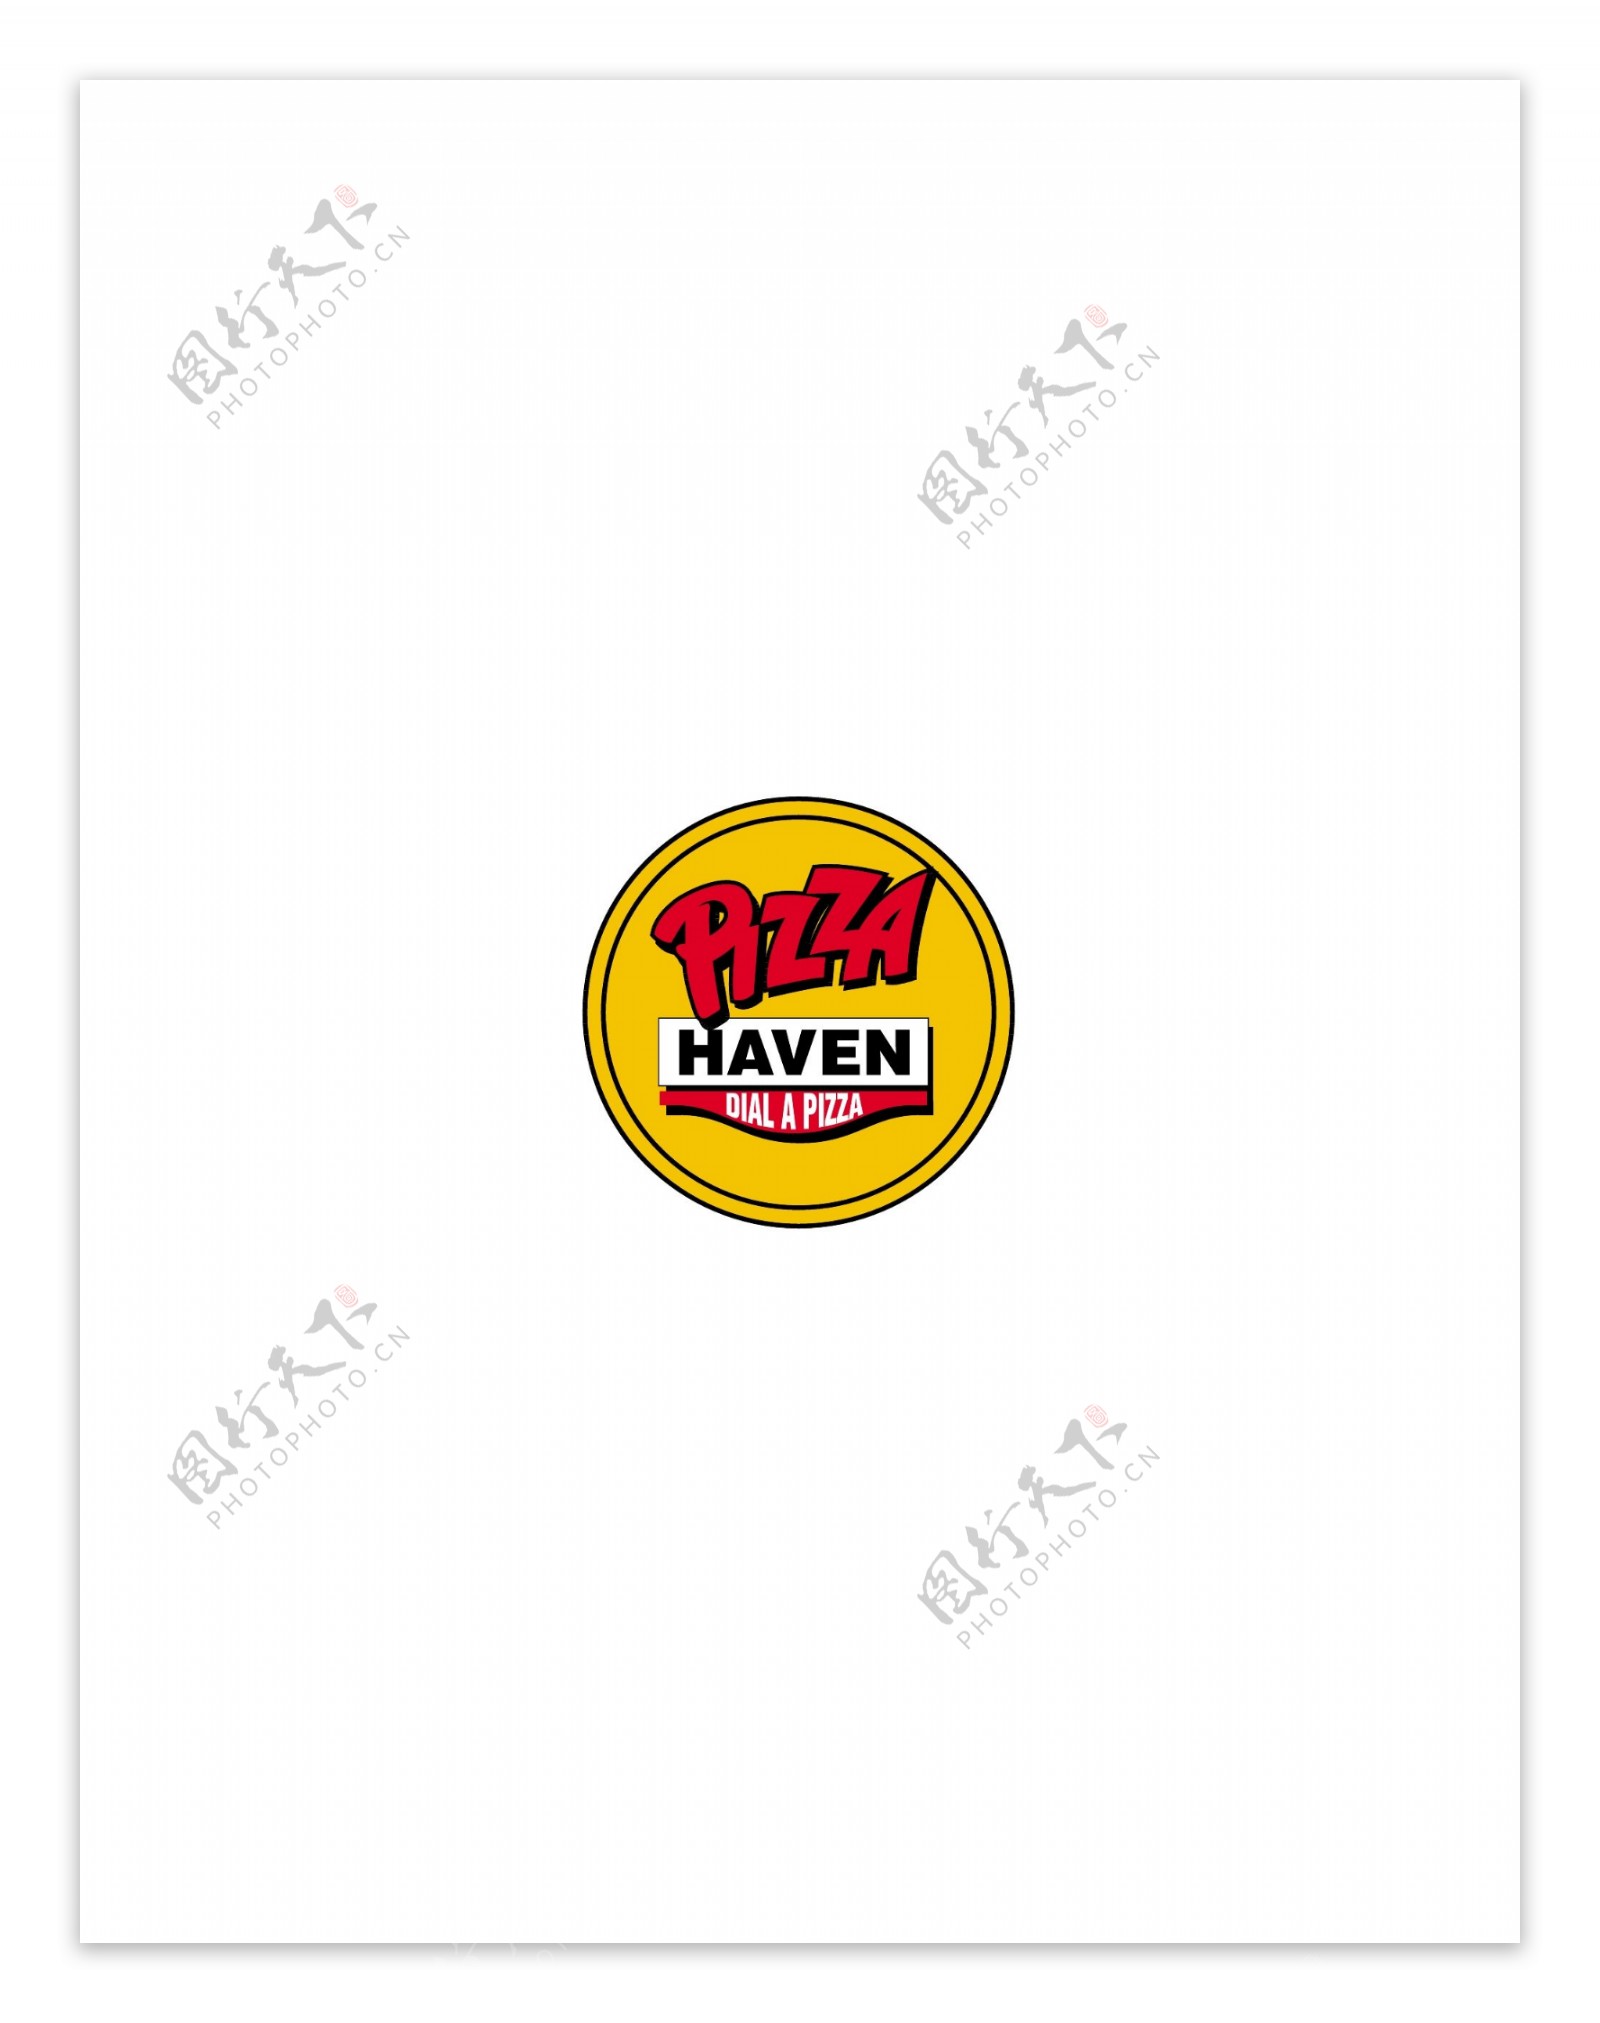 PizzaHavenlogo设计欣赏PizzaHaven饮料品牌LOGO下载标志设计欣赏